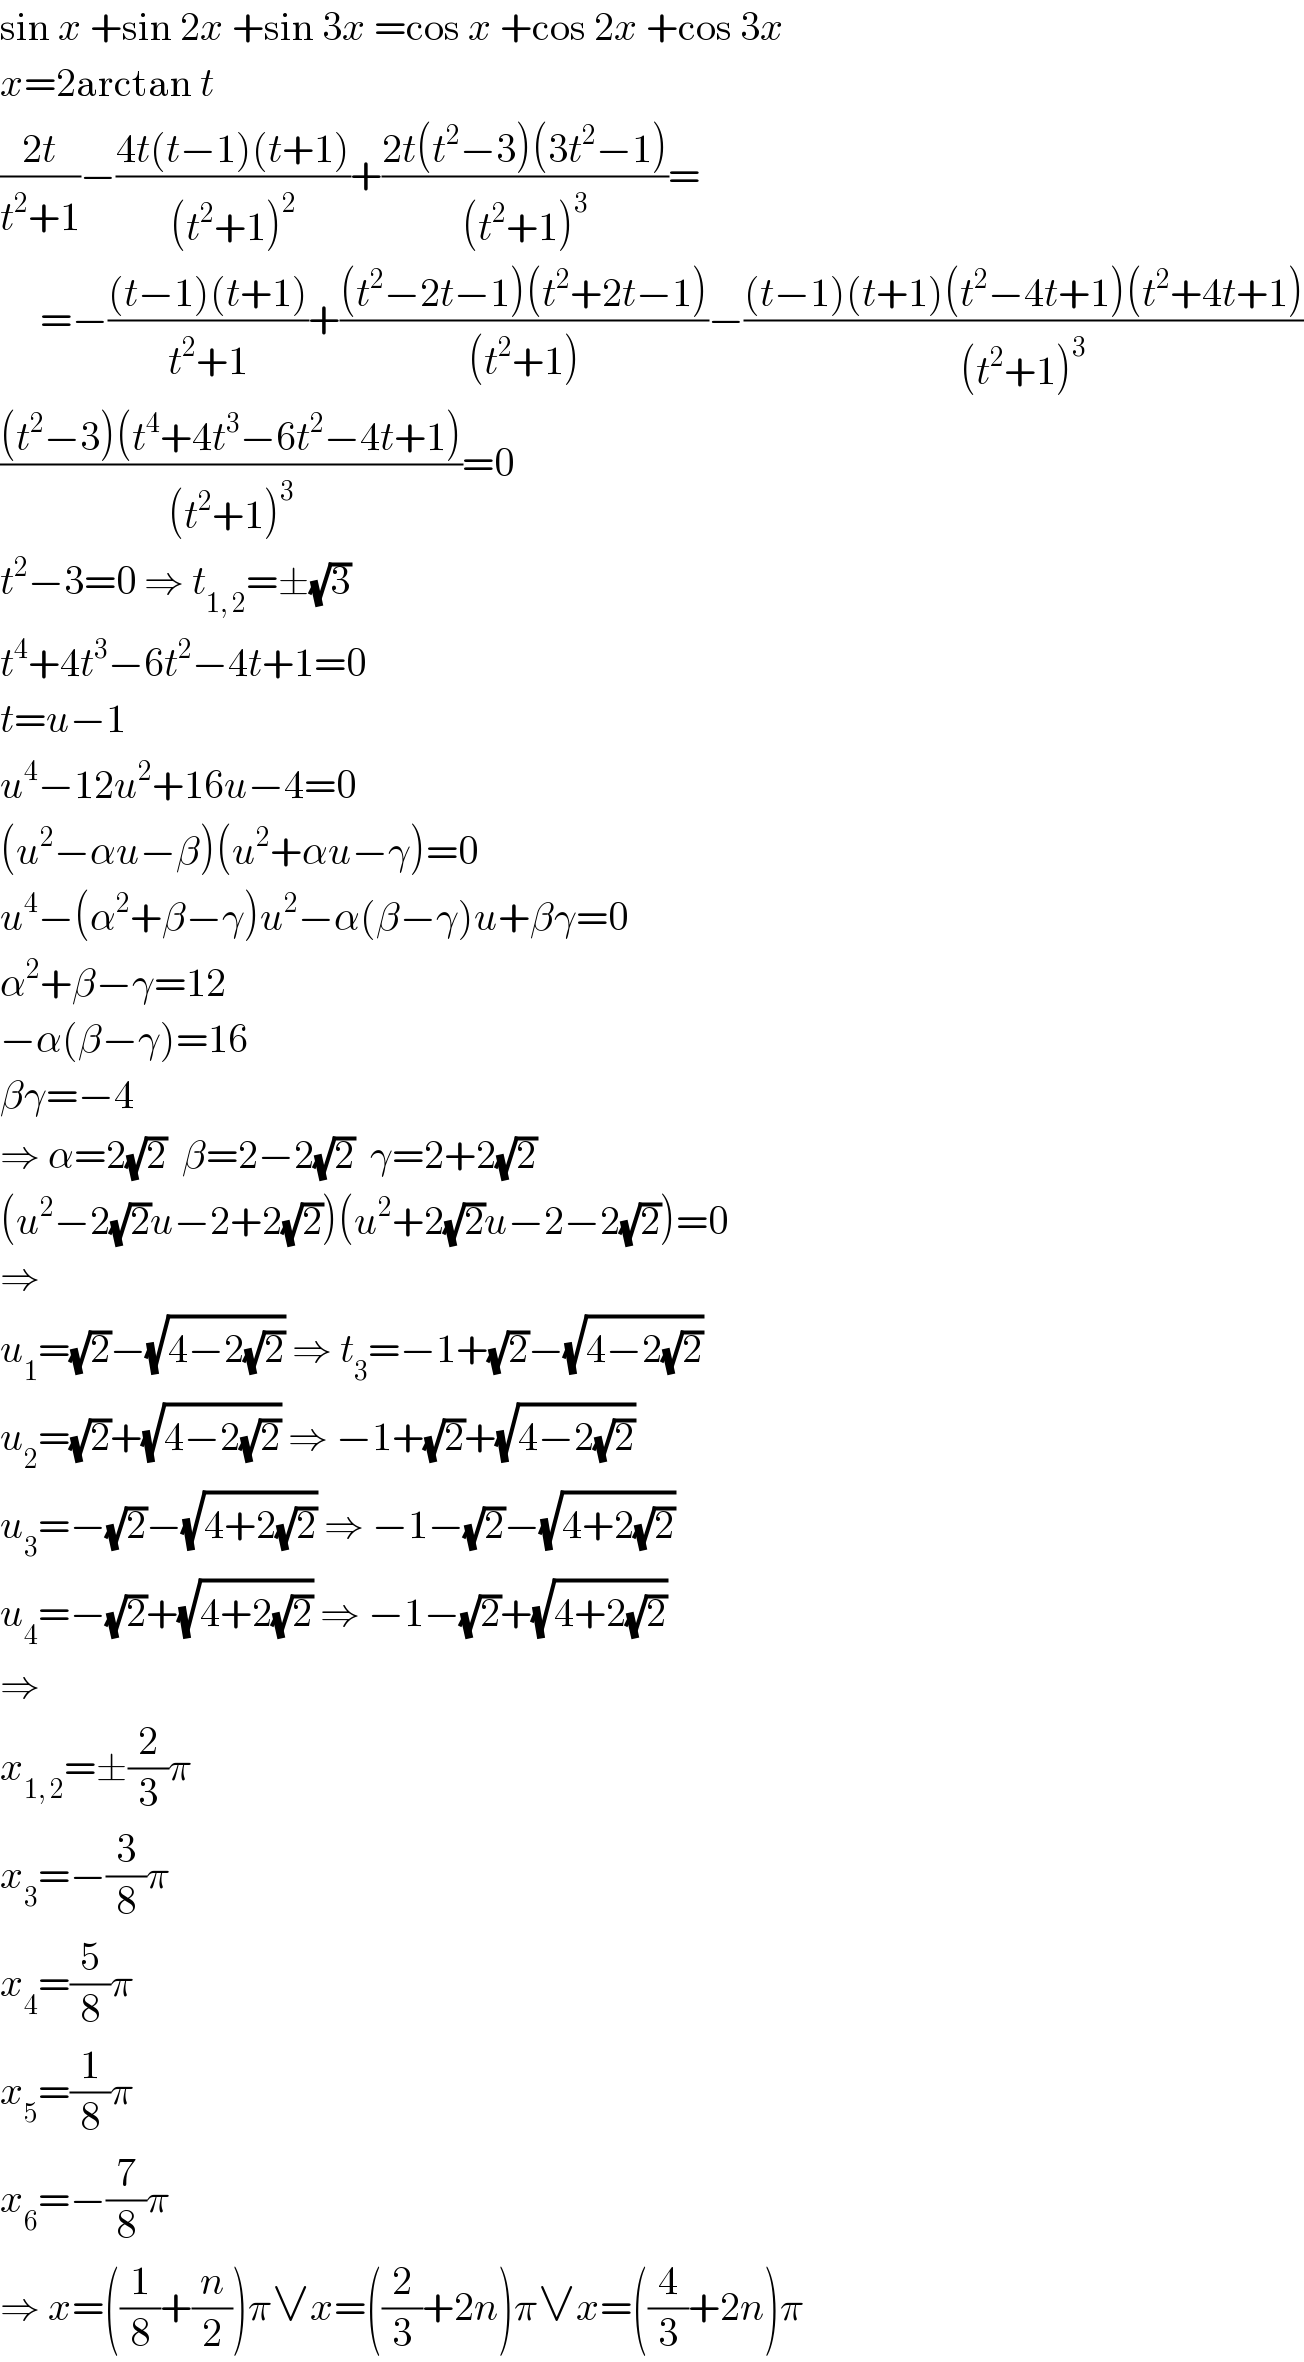 sin x +sin 2x +sin 3x =cos x +cos 2x +cos 3x  x=2arctan t  ((2t)/(t^2 +1))−((4t(t−1)(t+1))/((t^2 +1)^2 ))+((2t(t^2 −3)(3t^2 −1))/((t^2 +1)^3 ))=       =−(((t−1)(t+1))/(t^2 +1))+(((t^2 −2t−1)(t^2 +2t−1))/((t^2 +1)))−(((t−1)(t+1)(t^2 −4t+1)(t^2 +4t+1))/((t^2 +1)^3 ))  (((t^2 −3)(t^4 +4t^3 −6t^2 −4t+1))/((t^2 +1)^3 ))=0  t^2 −3=0 ⇒ t_(1, 2) =±(√3)  t^4 +4t^3 −6t^2 −4t+1=0  t=u−1  u^4 −12u^2 +16u−4=0  (u^2 −αu−β)(u^2 +αu−γ)=0  u^4 −(α^2 +β−γ)u^2 −α(β−γ)u+βγ=0  α^2 +β−γ=12  −α(β−γ)=16  βγ=−4  ⇒ α=2(√2)  β=2−2(√2)  γ=2+2(√2)  (u^2 −2(√2)u−2+2(√2))(u^2 +2(√2)u−2−2(√2))=0  ⇒  u_1 =(√2)−(√(4−2(√2))) ⇒ t_3 =−1+(√2)−(√(4−2(√2)))  u_2 =(√2)+(√(4−2(√2))) ⇒ −1+(√2)+(√(4−2(√2)))  u_3 =−(√2)−(√(4+2(√2))) ⇒ −1−(√2)−(√(4+2(√2)))  u_4 =−(√2)+(√(4+2(√2))) ⇒ −1−(√2)+(√(4+2(√2)))  ⇒  x_(1, 2) =±(2/3)π  x_3 =−(3/8)π  x_4 =(5/8)π  x_5 =(1/8)π  x_6 =−(7/8)π  ⇒ x=((1/8)+(n/2))π∨x=((2/3)+2n)π∨x=((4/3)+2n)π  